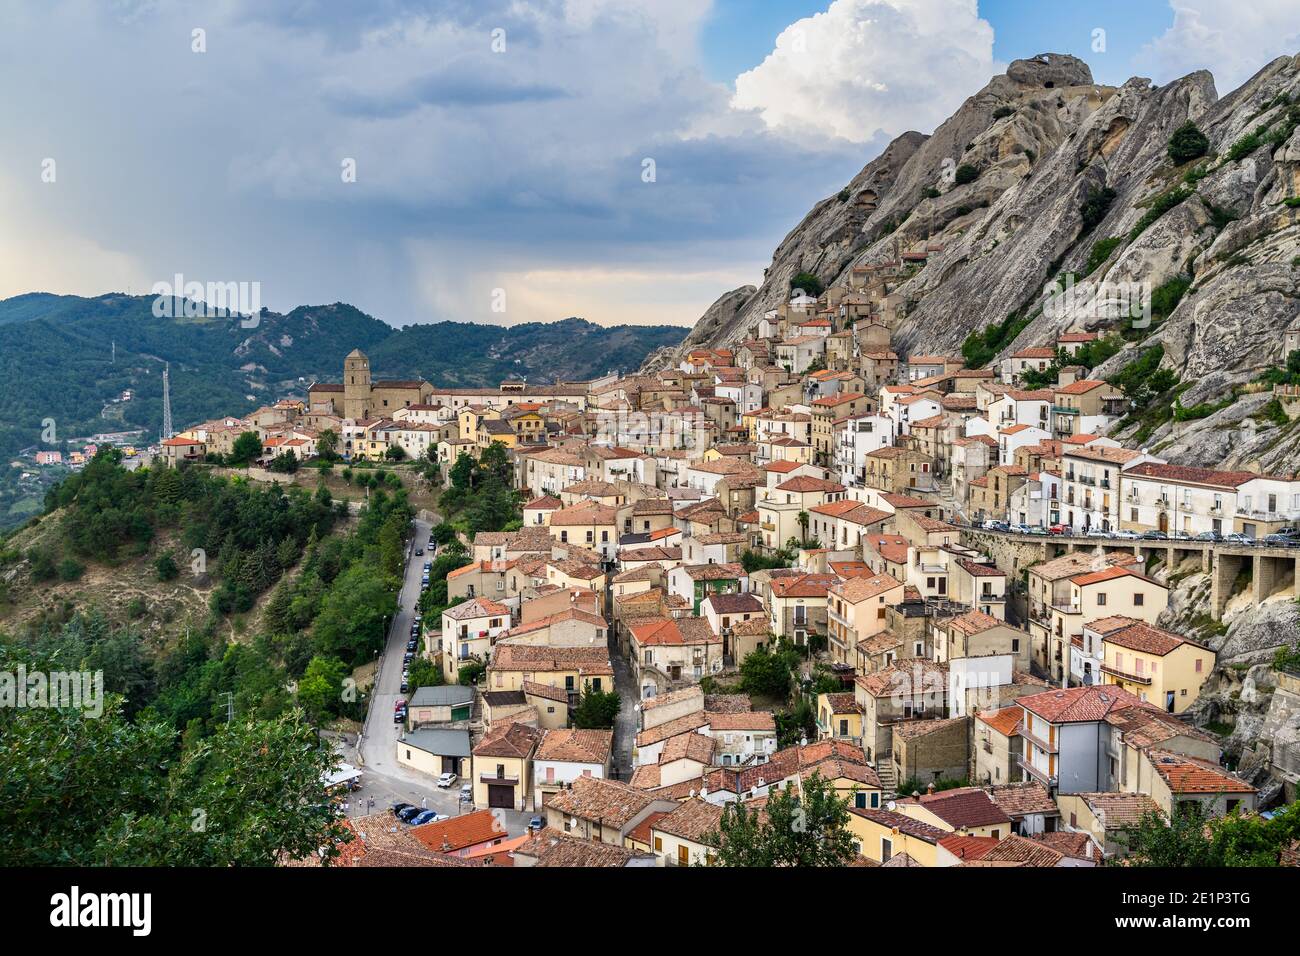 Le village pittoresque de Pietrapertosa sur les rochers pittoresques des Apennines Dolomiti Lucane, Basilicate, Italie Banque D'Images